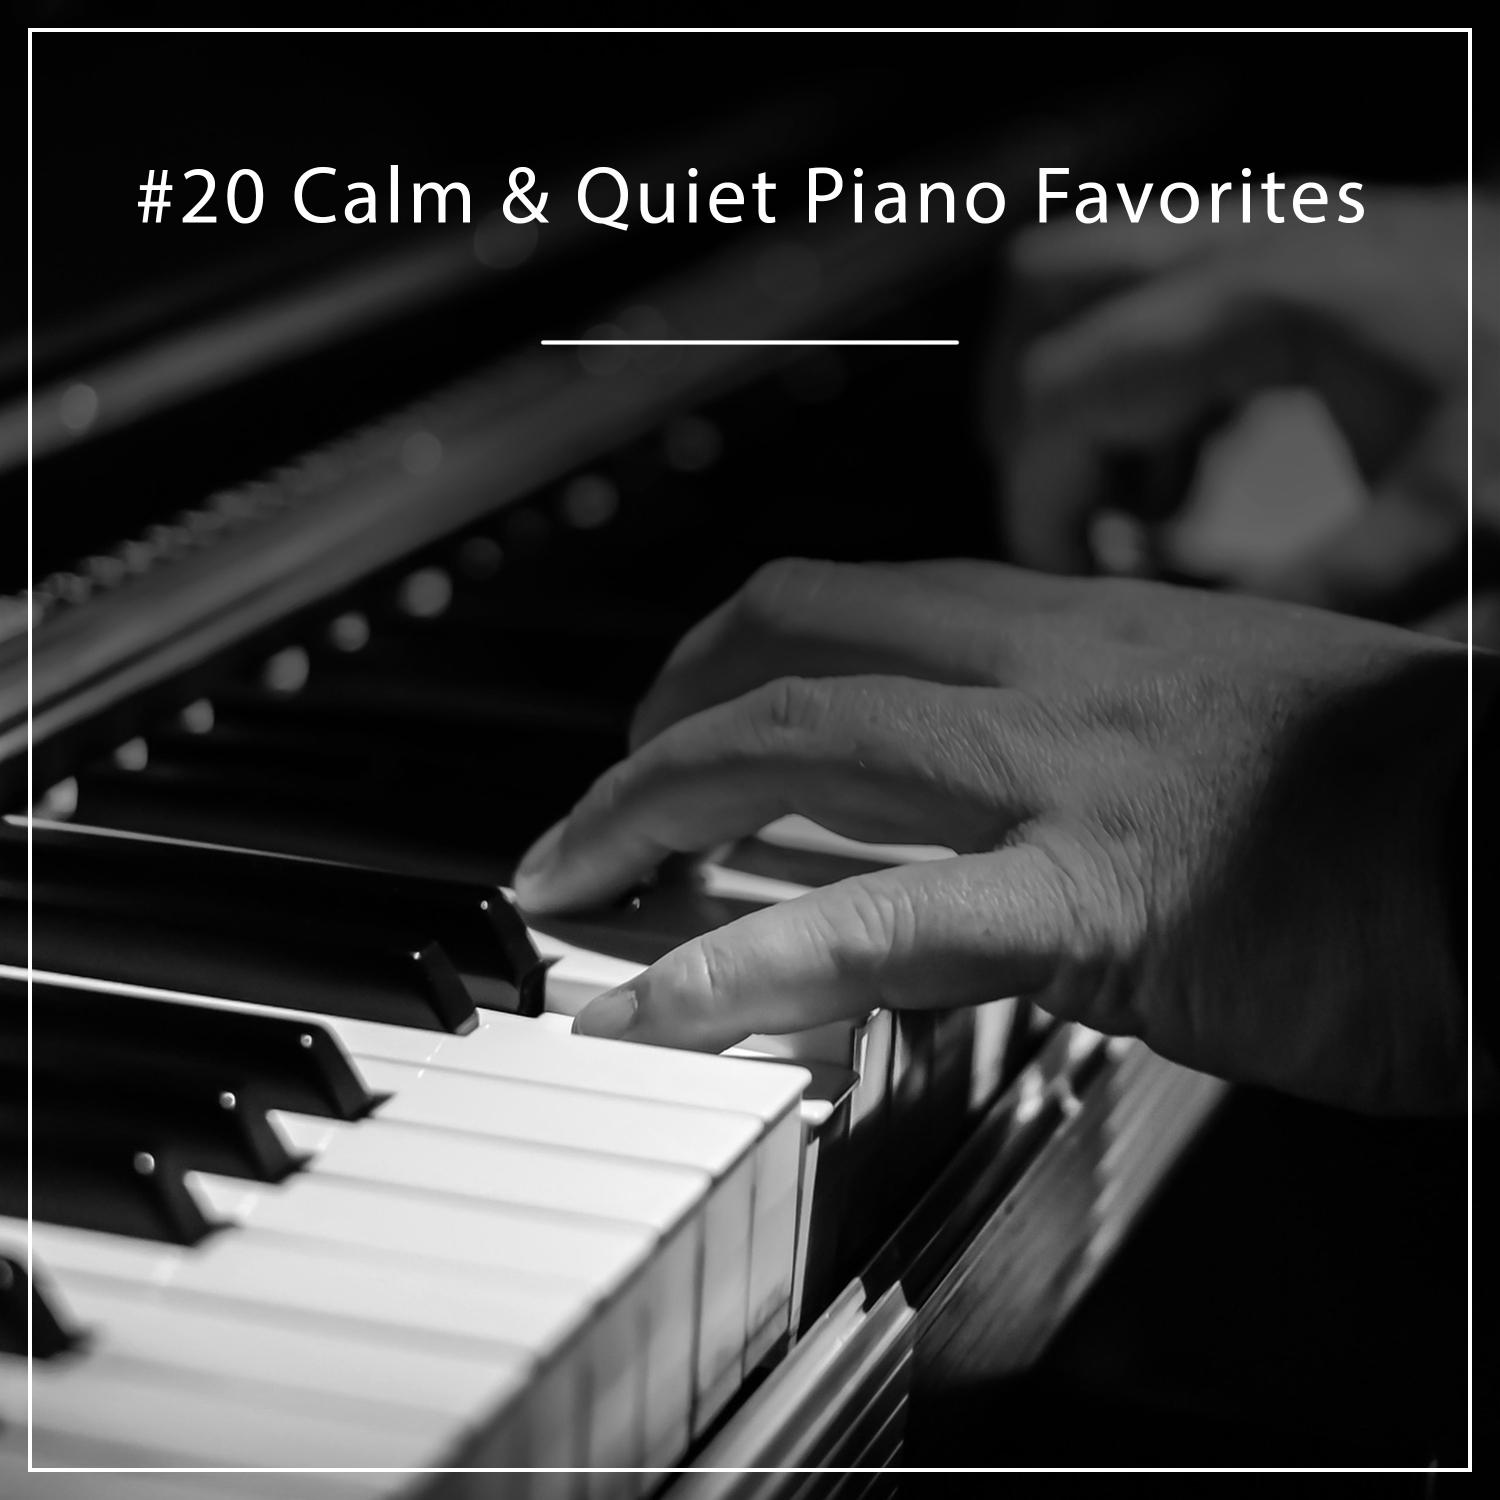 #20 Calm & Quiet Piano Favorites